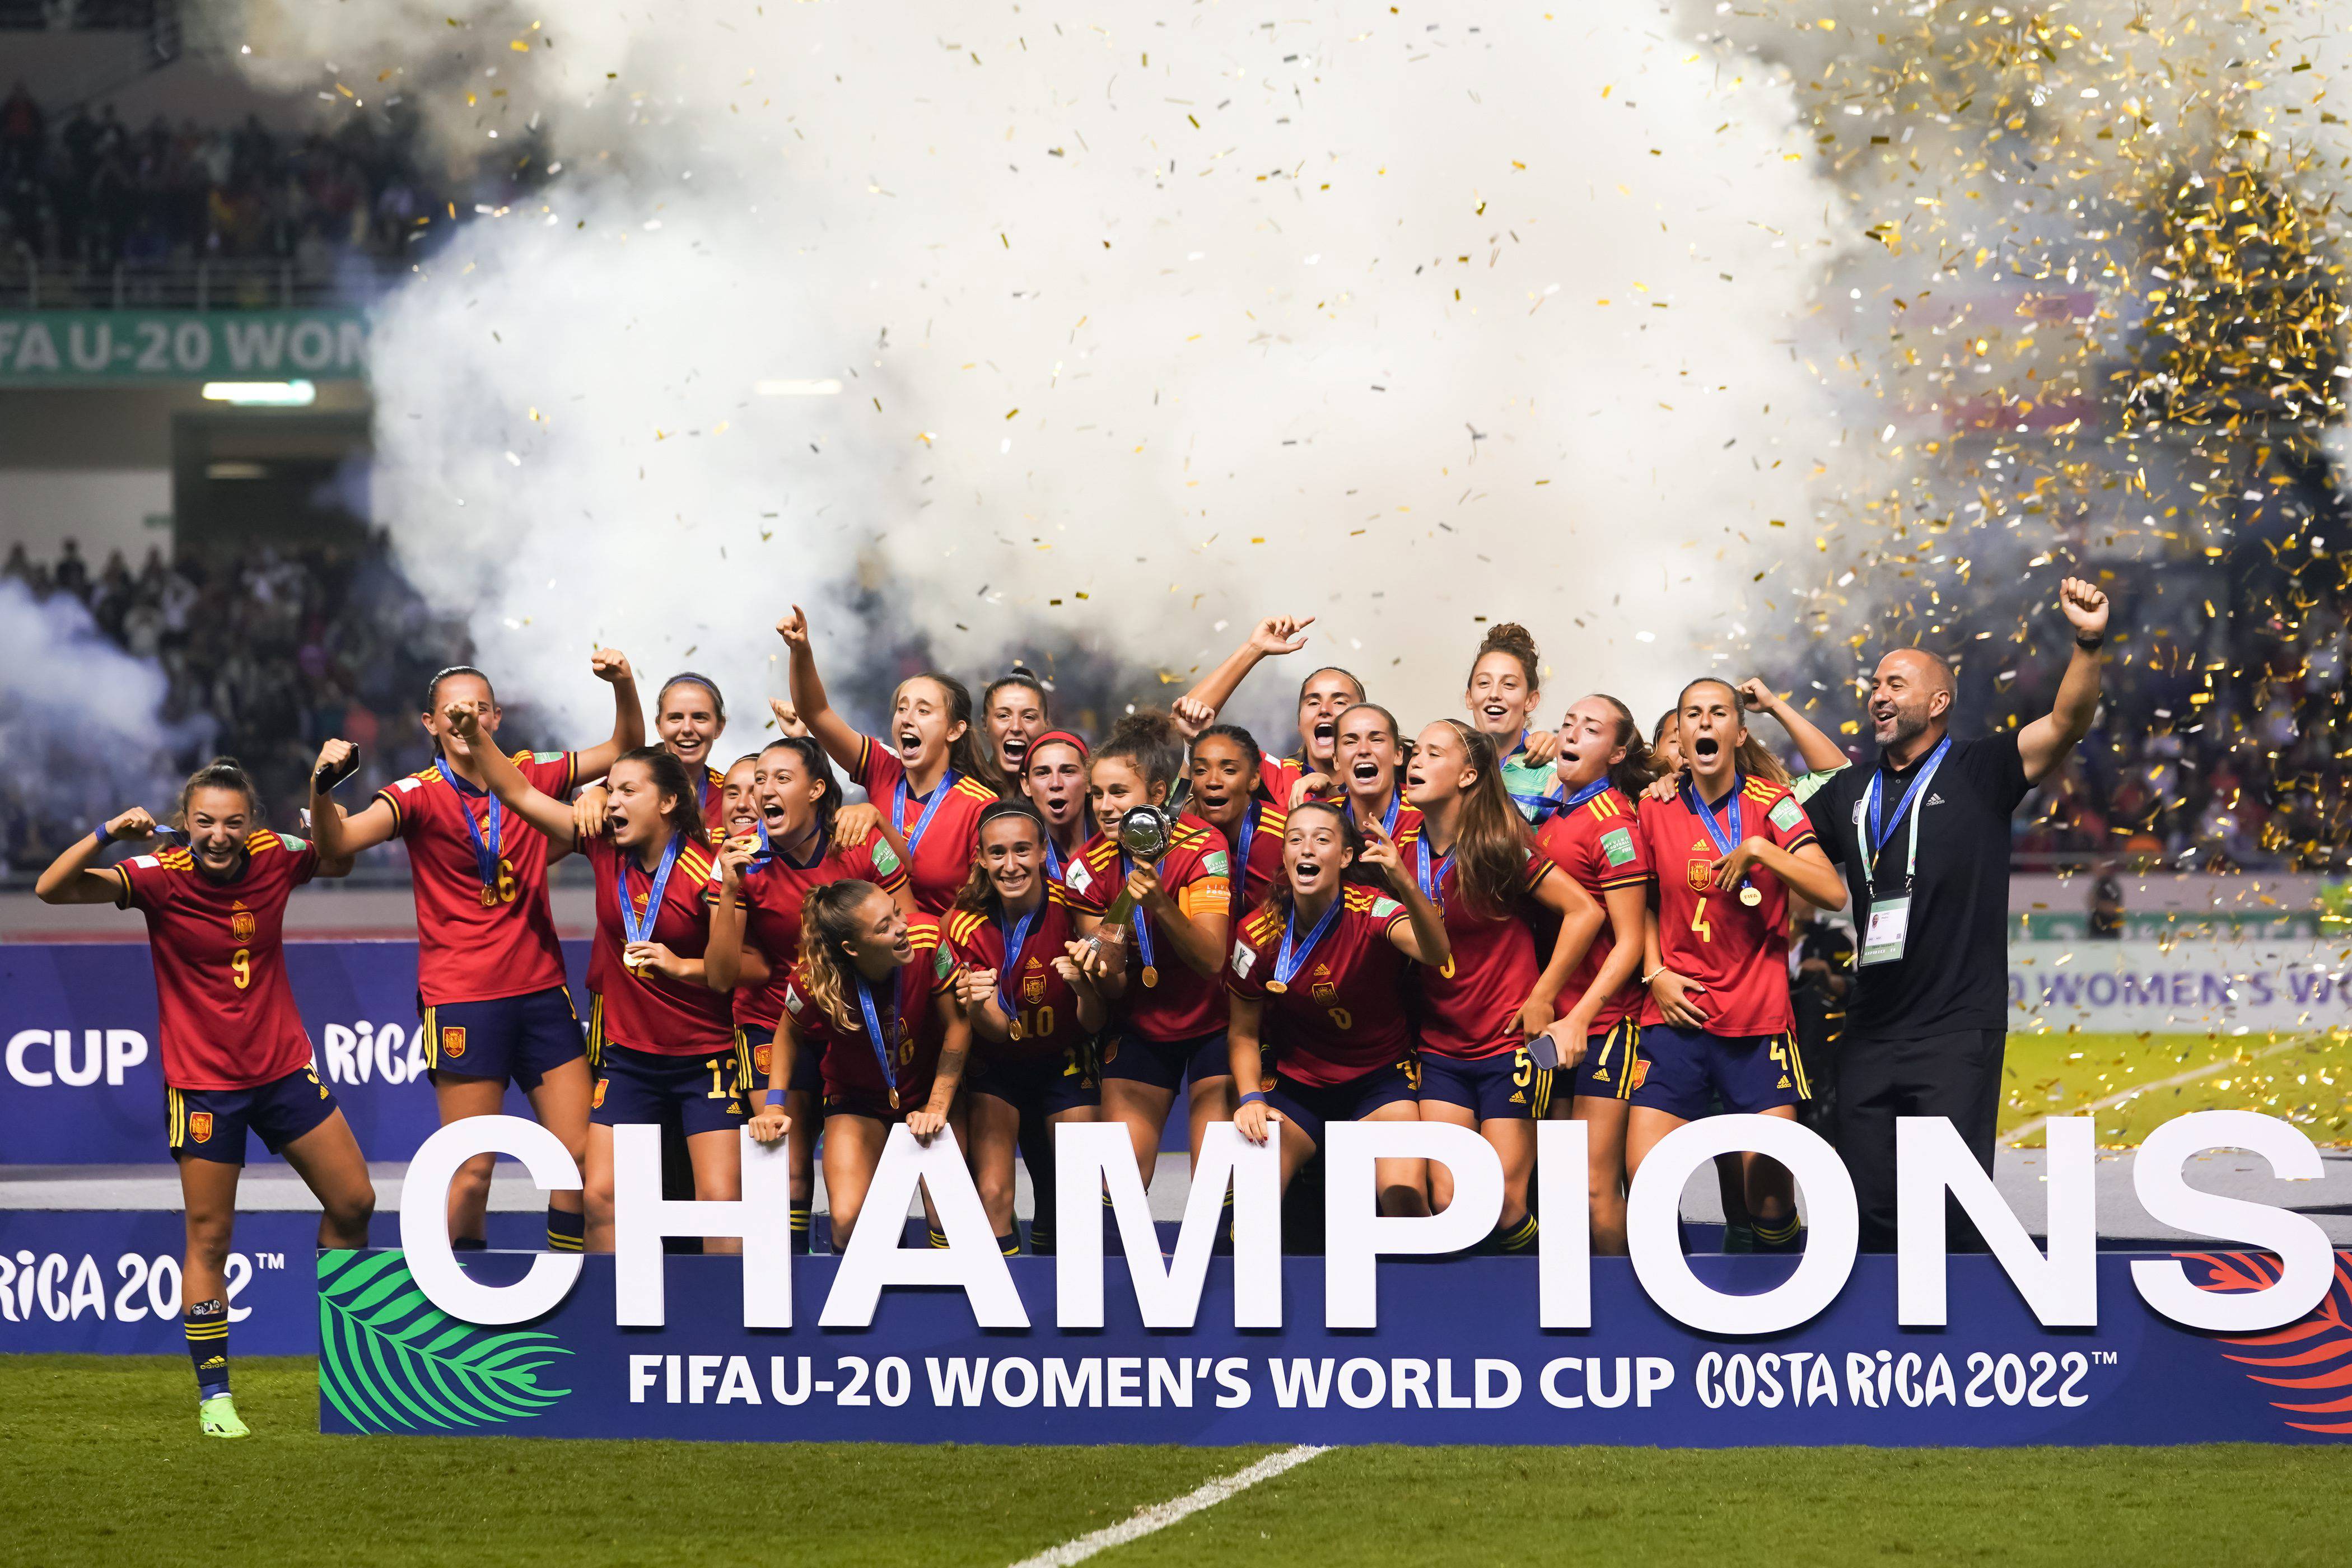 Cuantos mundiales tiene la seleccion española femenina de futbol